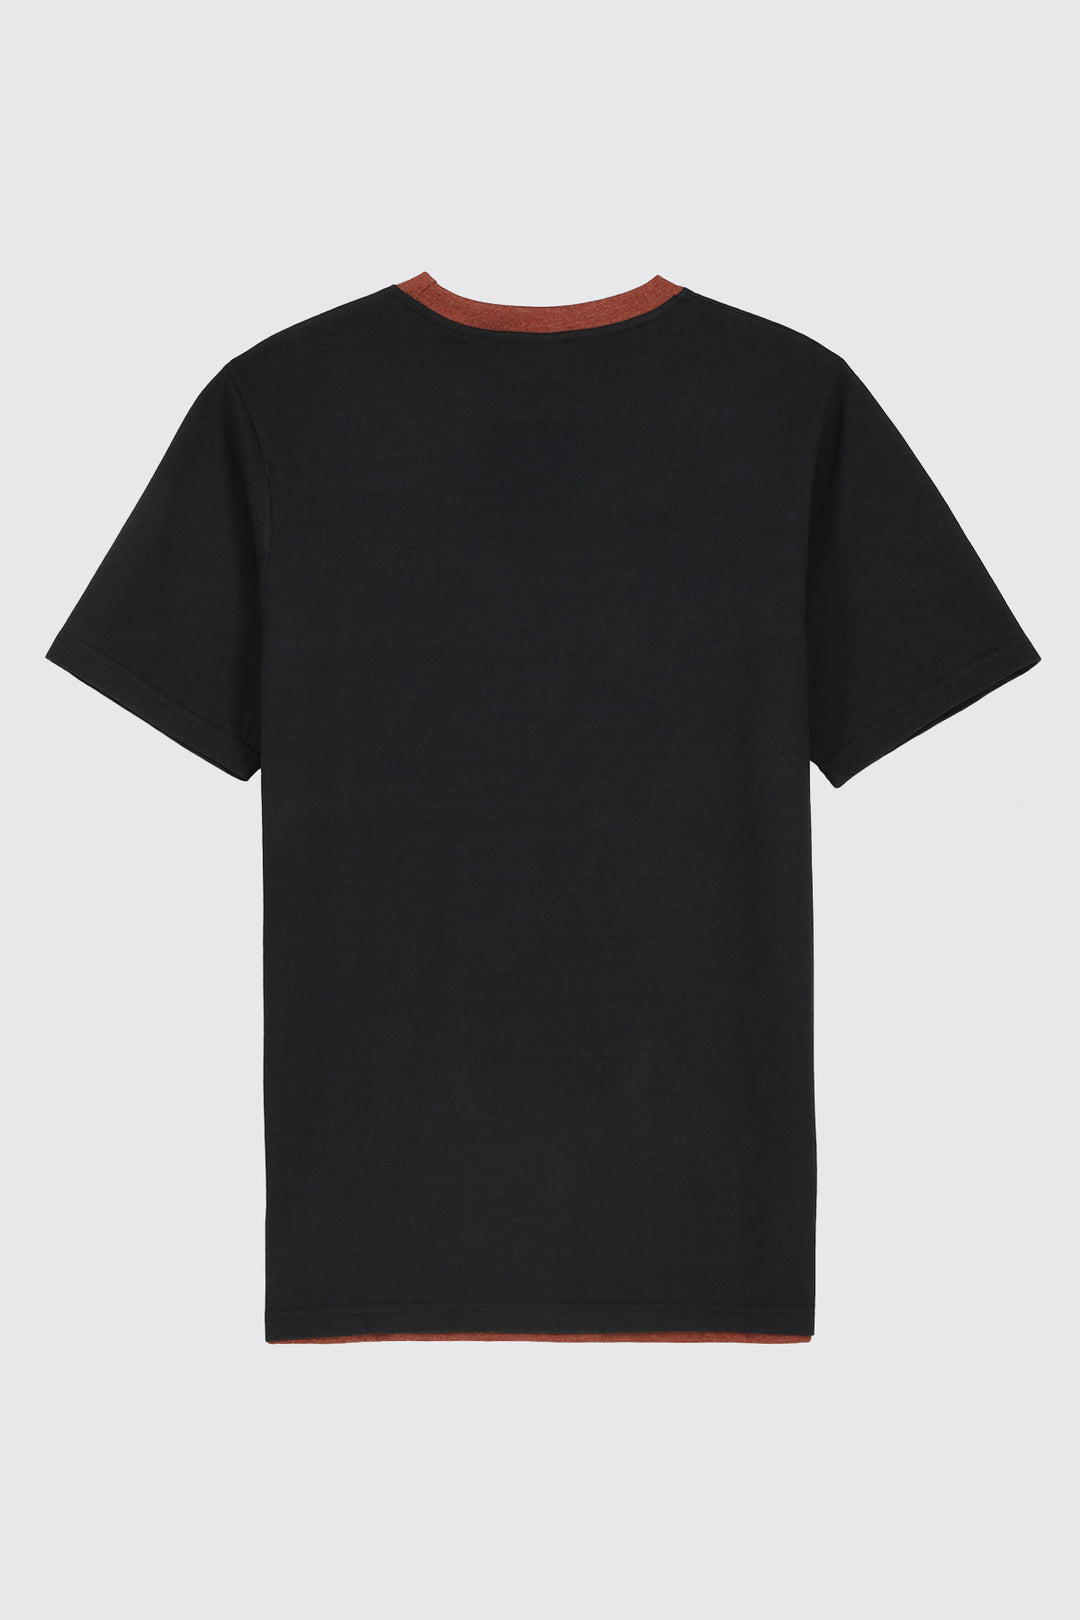 Redemption Melange Brown Graphic T-Shirt (Plus Size) - A23 - MT0290P